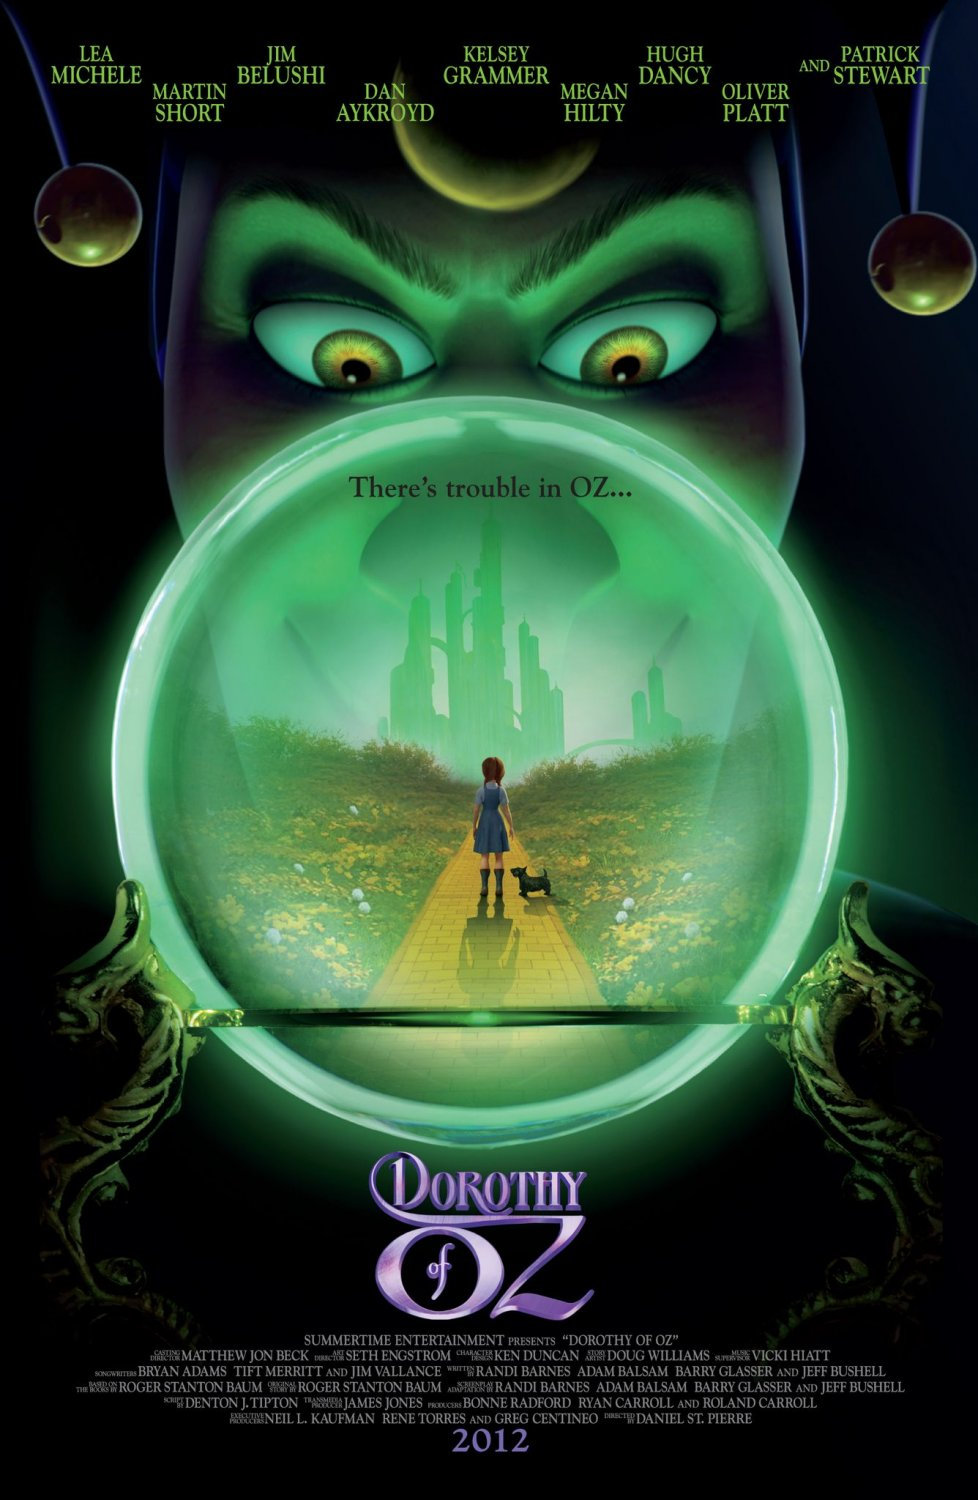 Poster of Summertime Entertainment's Legends of Oz: Dorothy's Return (2014)